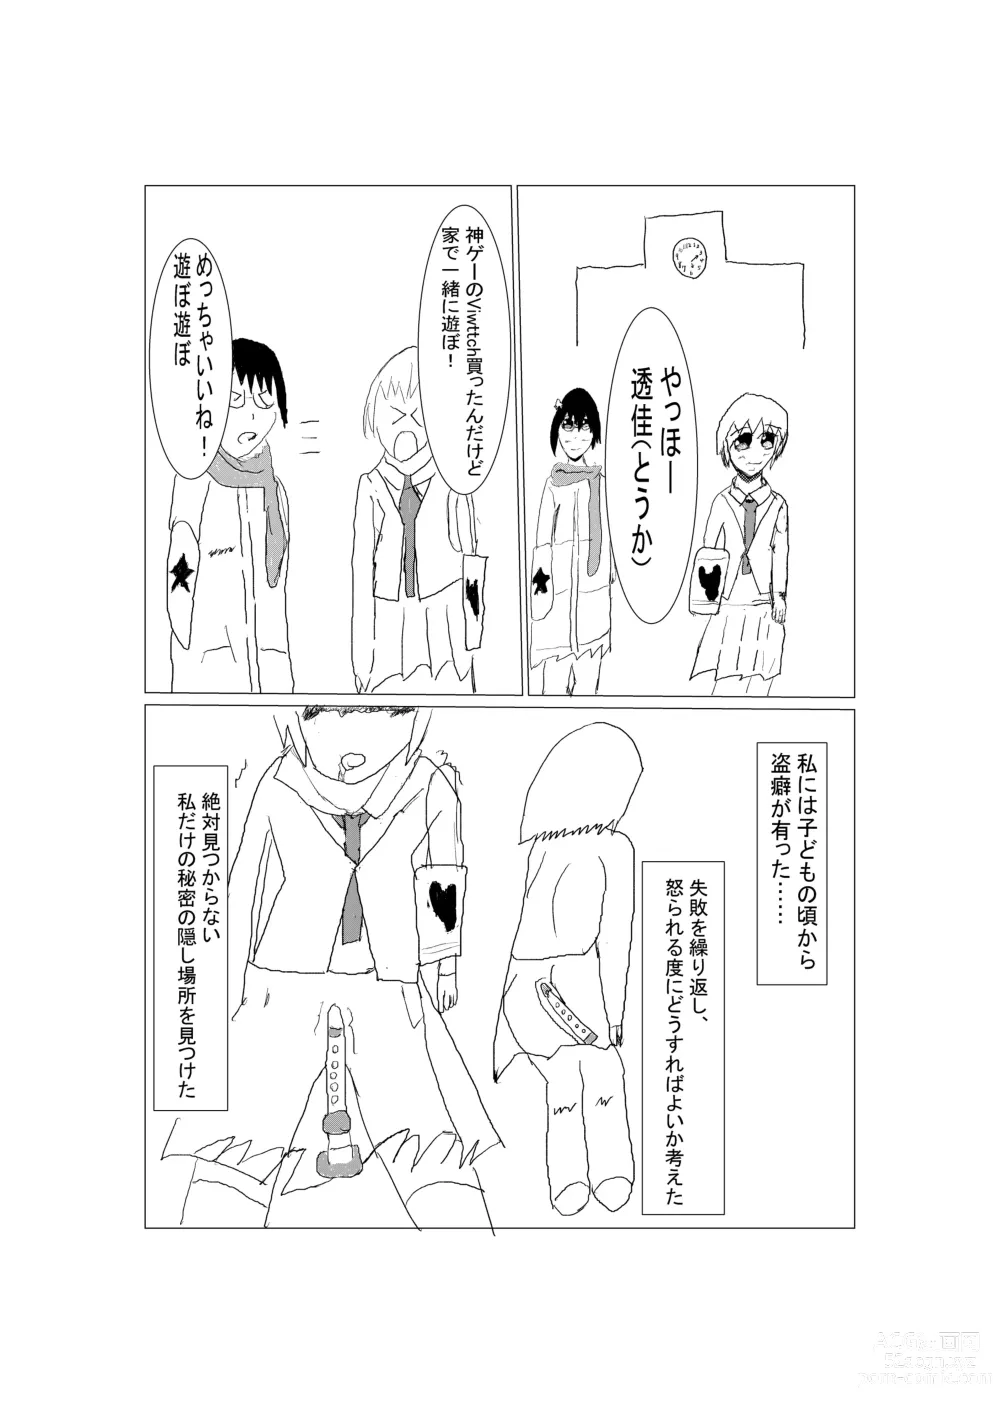 Page 2 of doujinshi Touheki Shoujo no Junan